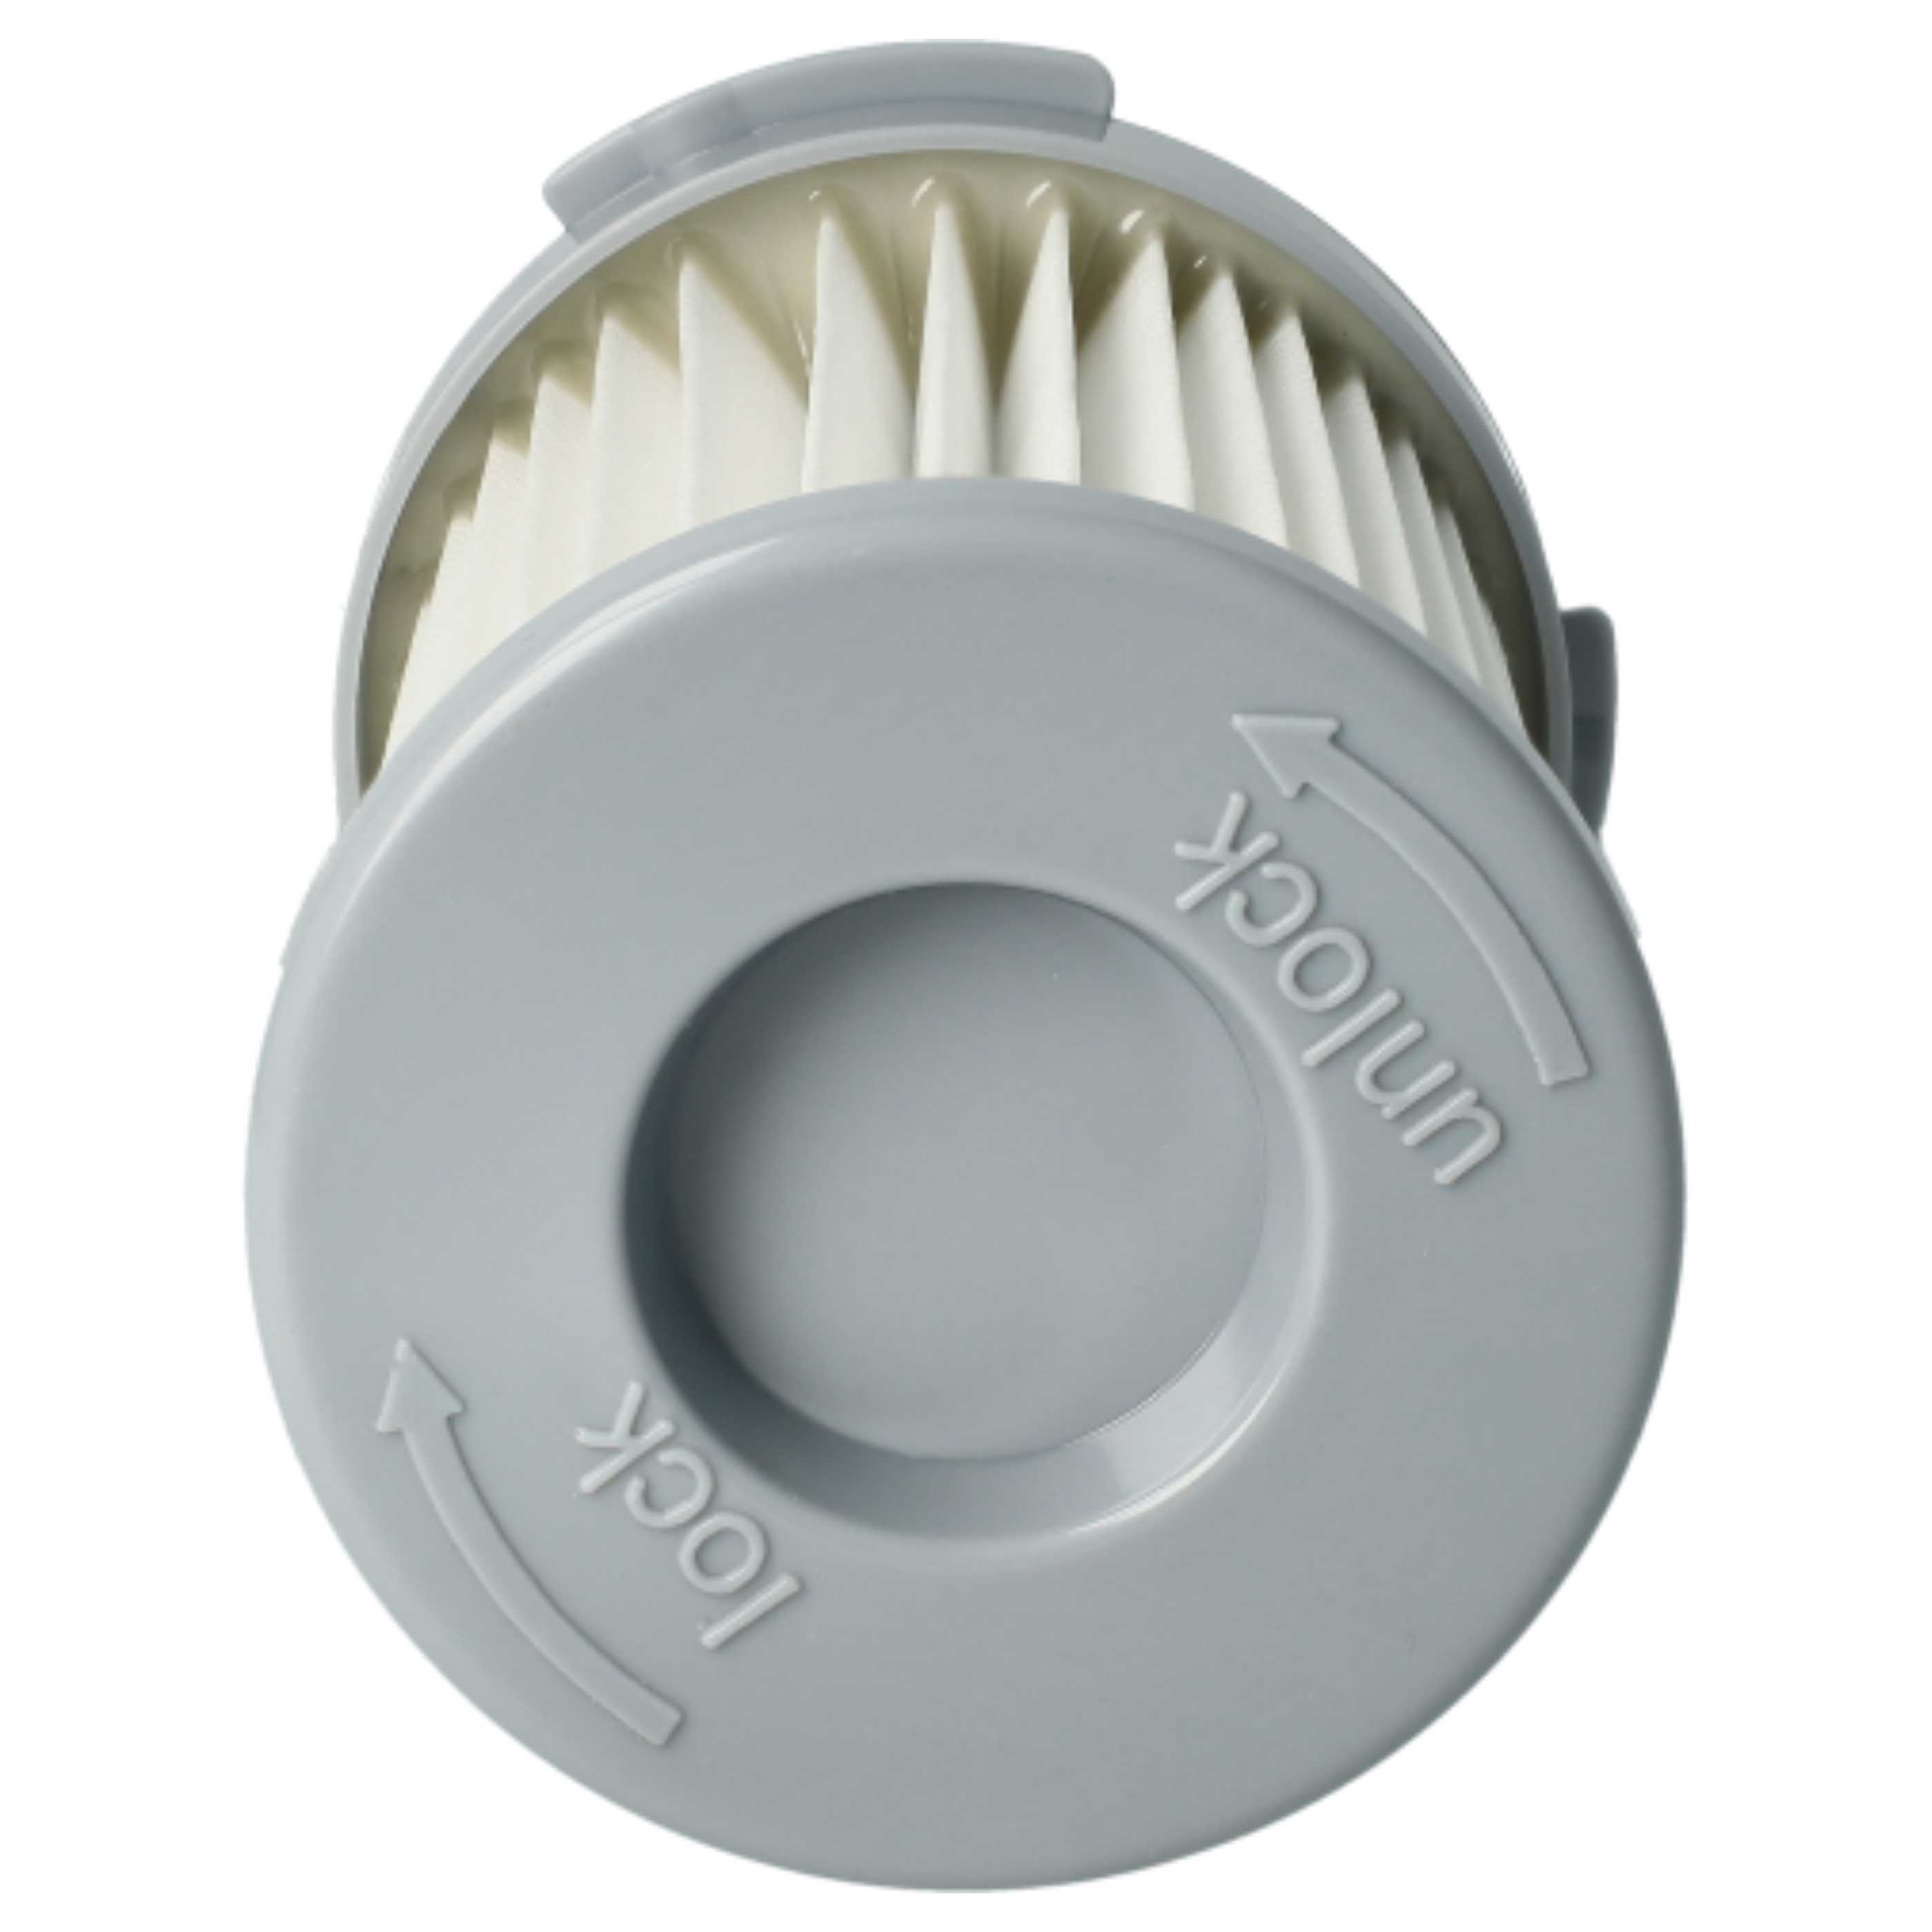 3x Filtro sostituisce Electrolux EF75B per aspirapolvere - filtro aria di scarico